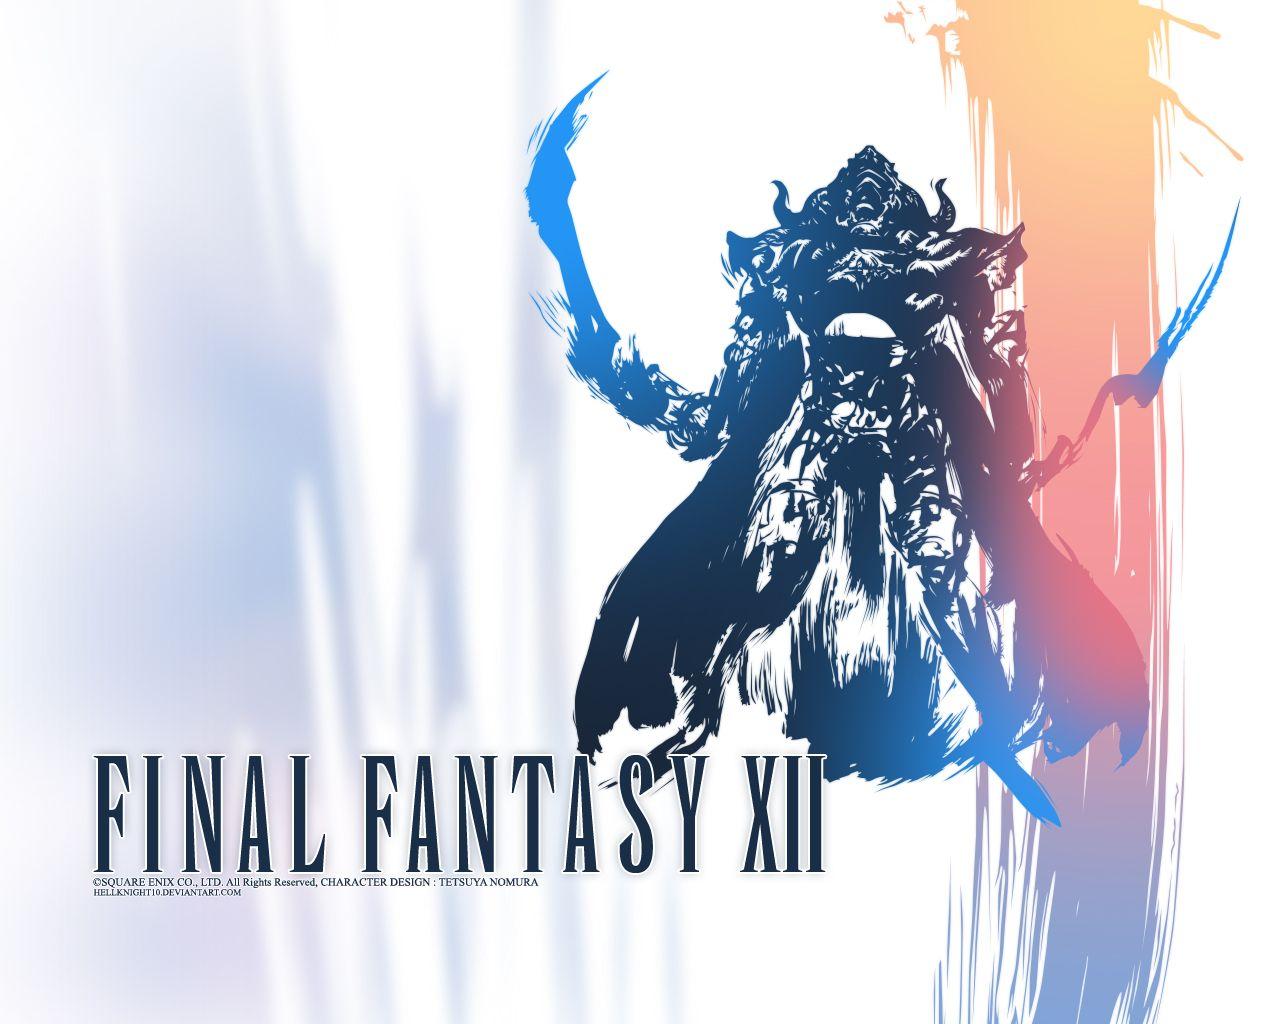 Final Fantasy XII HD Remaster Releasing in July. Den of Geek